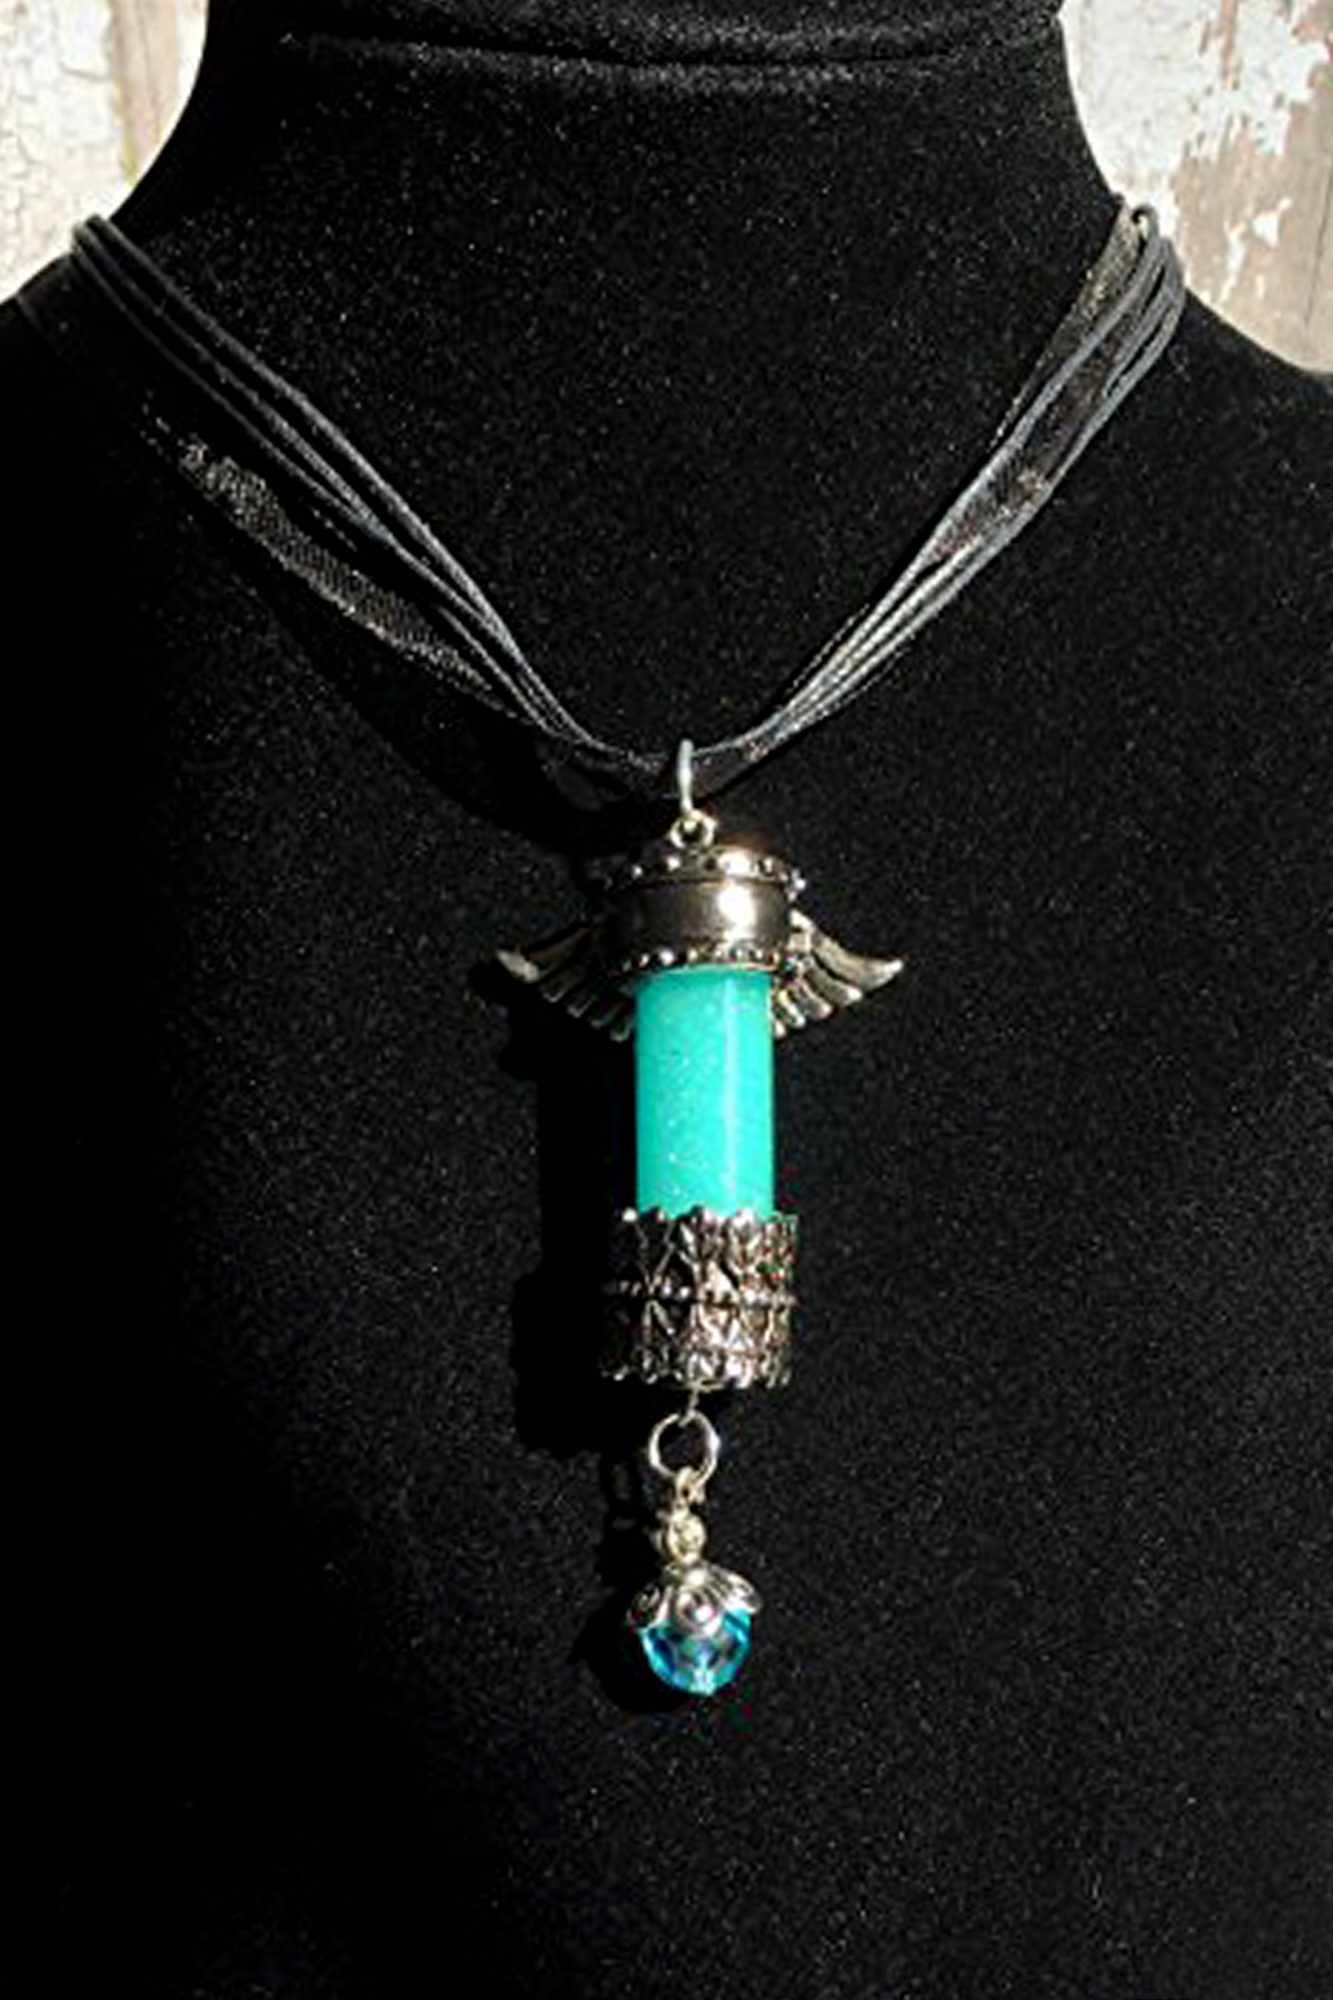 Castiel's necklace